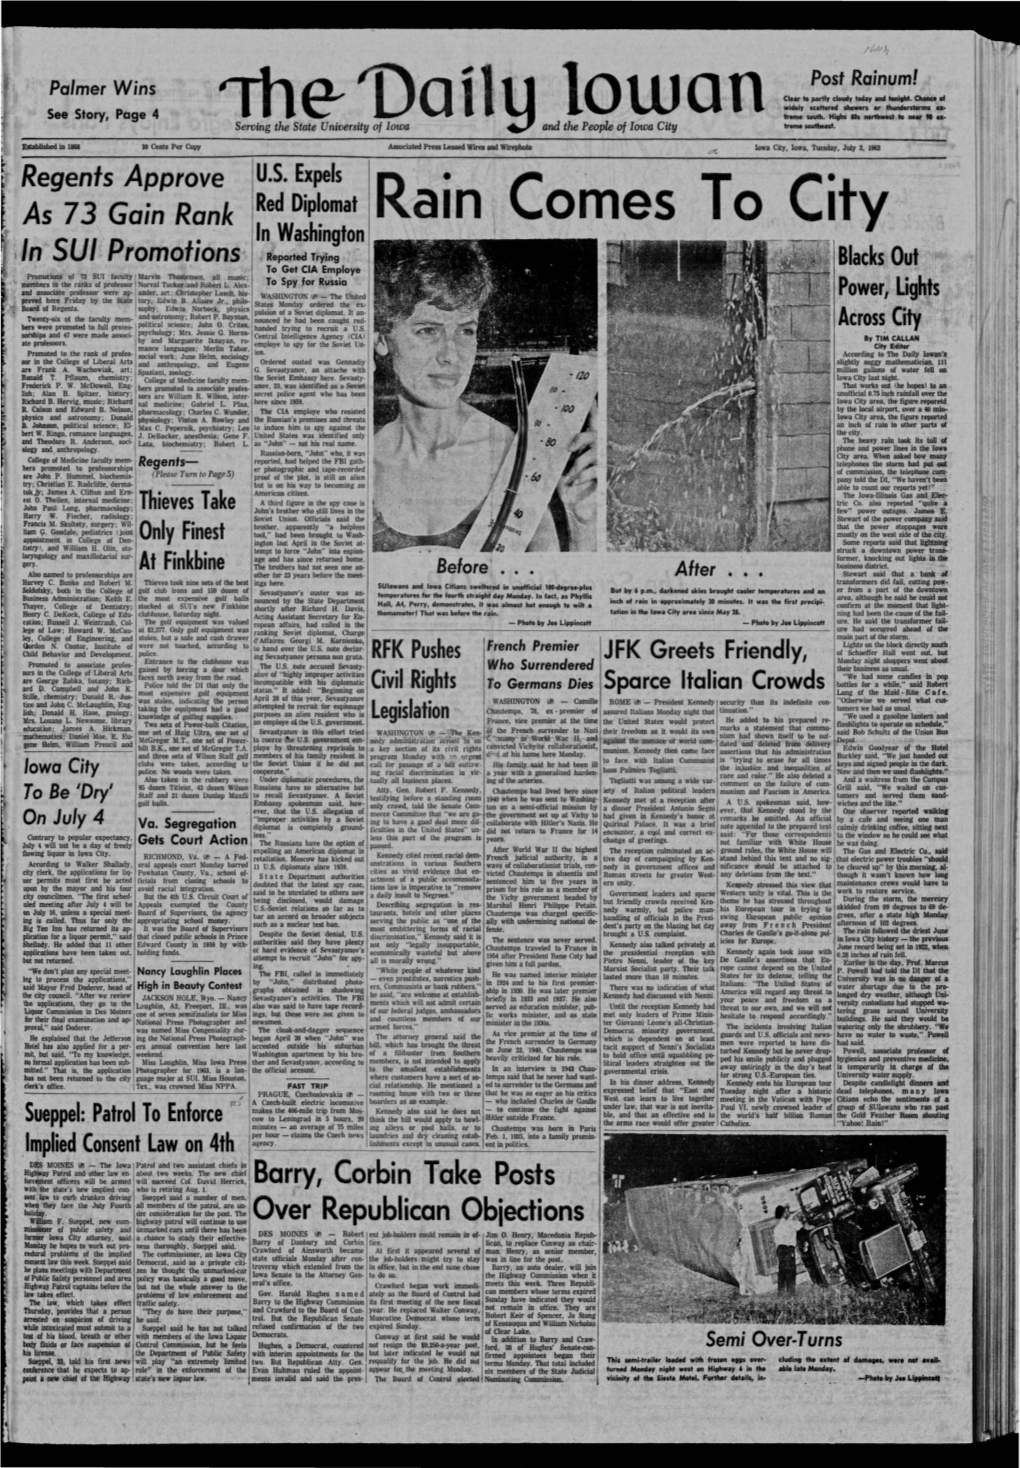 Daily Iowan (Iowa City, Iowa), 1963-07-02